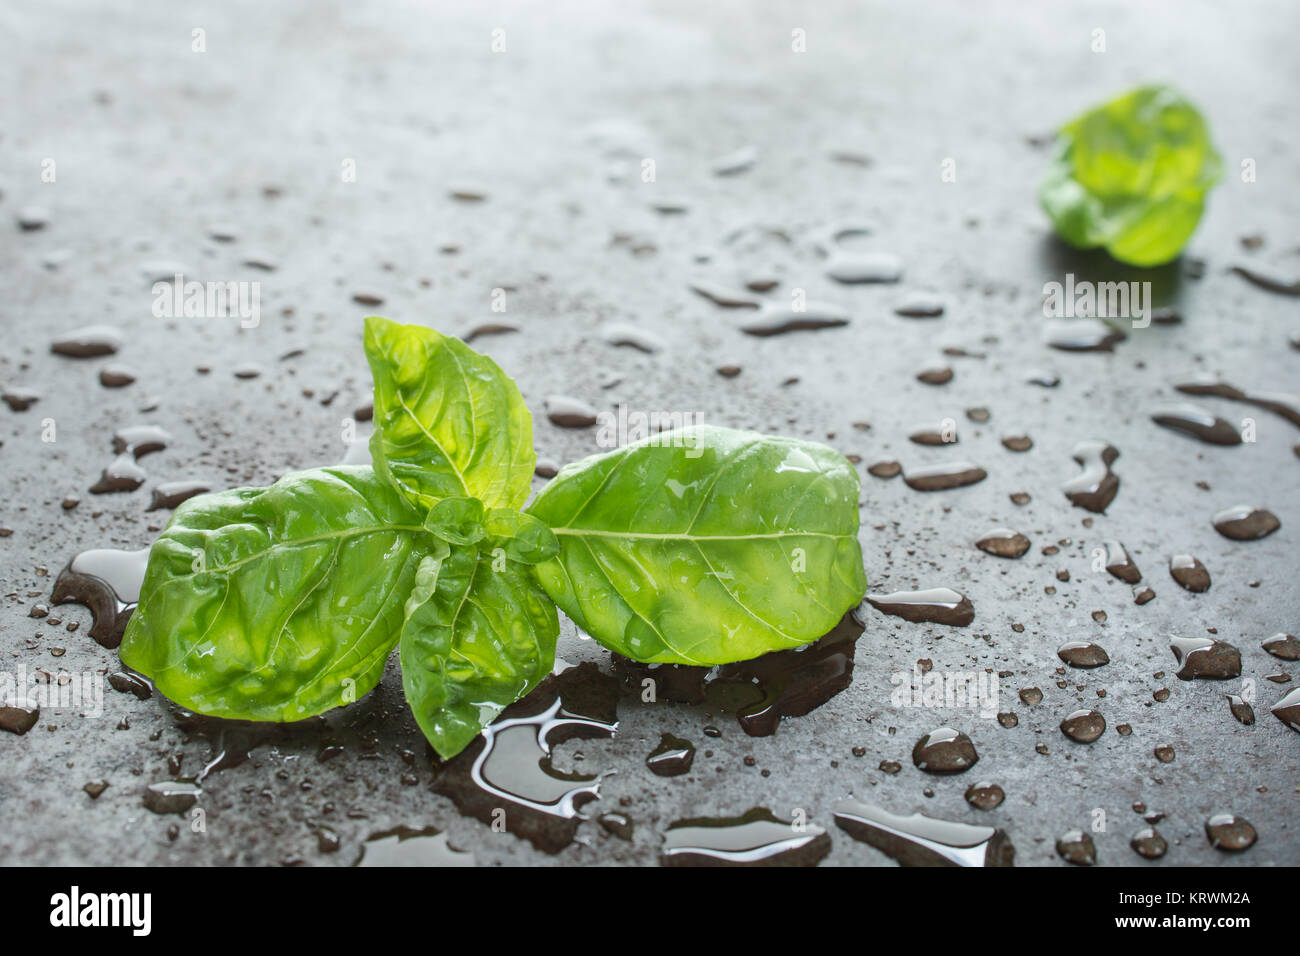 Grüne Blätter vom Basilikum als Zutat mit Wassertropfen Stock Photo